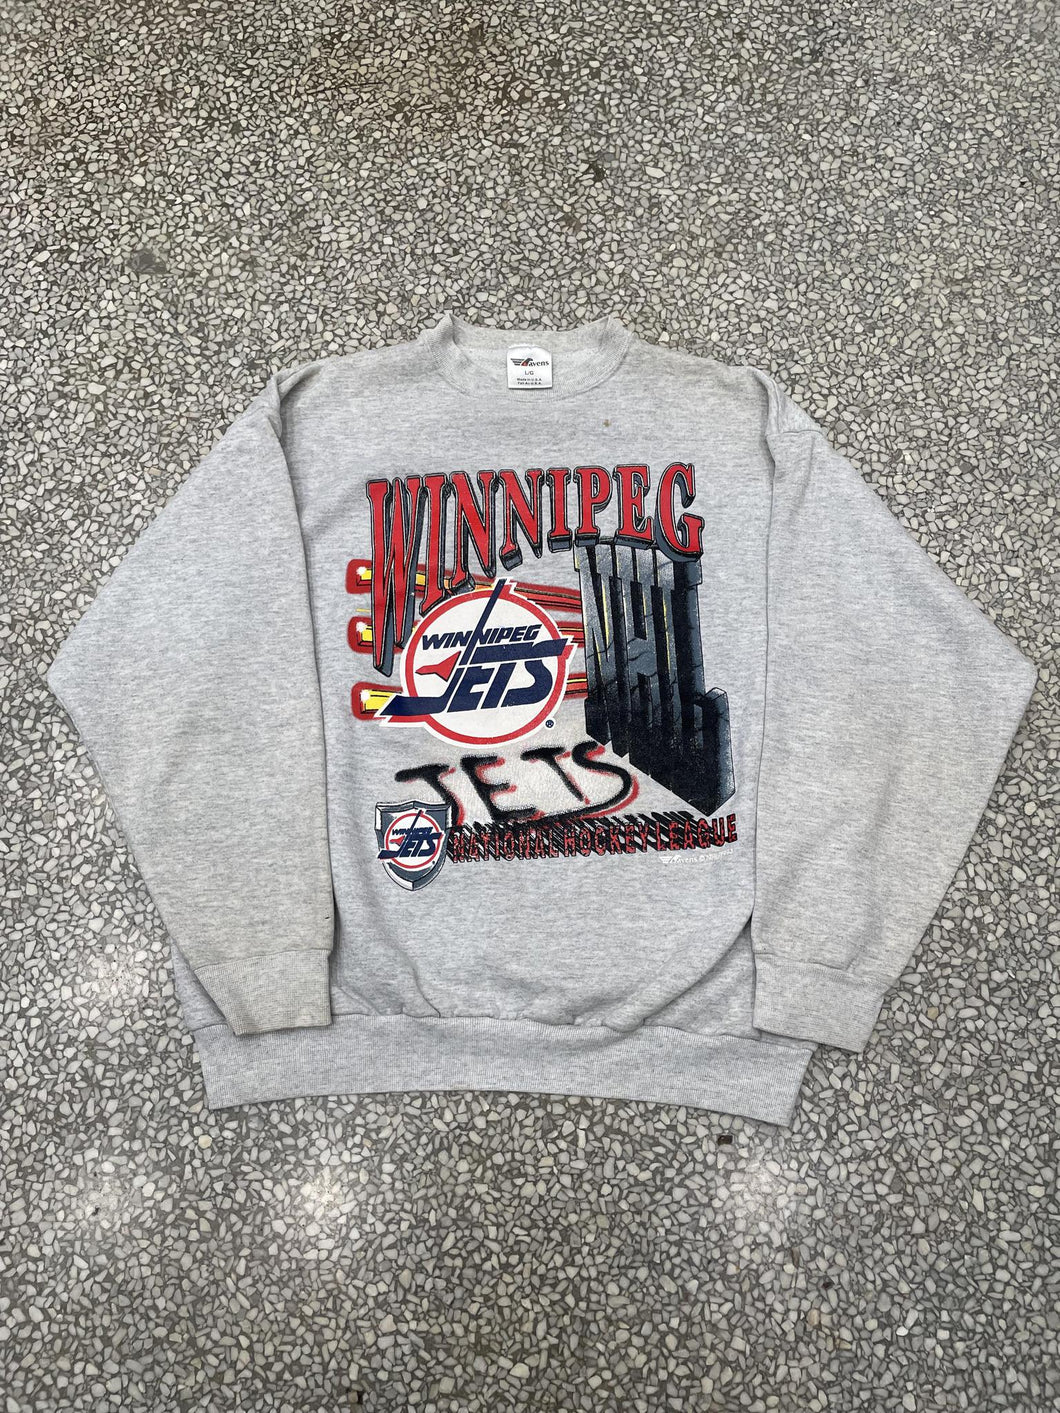 Winnipeg Jets Vintage NHL Crewneck Sweatshirt